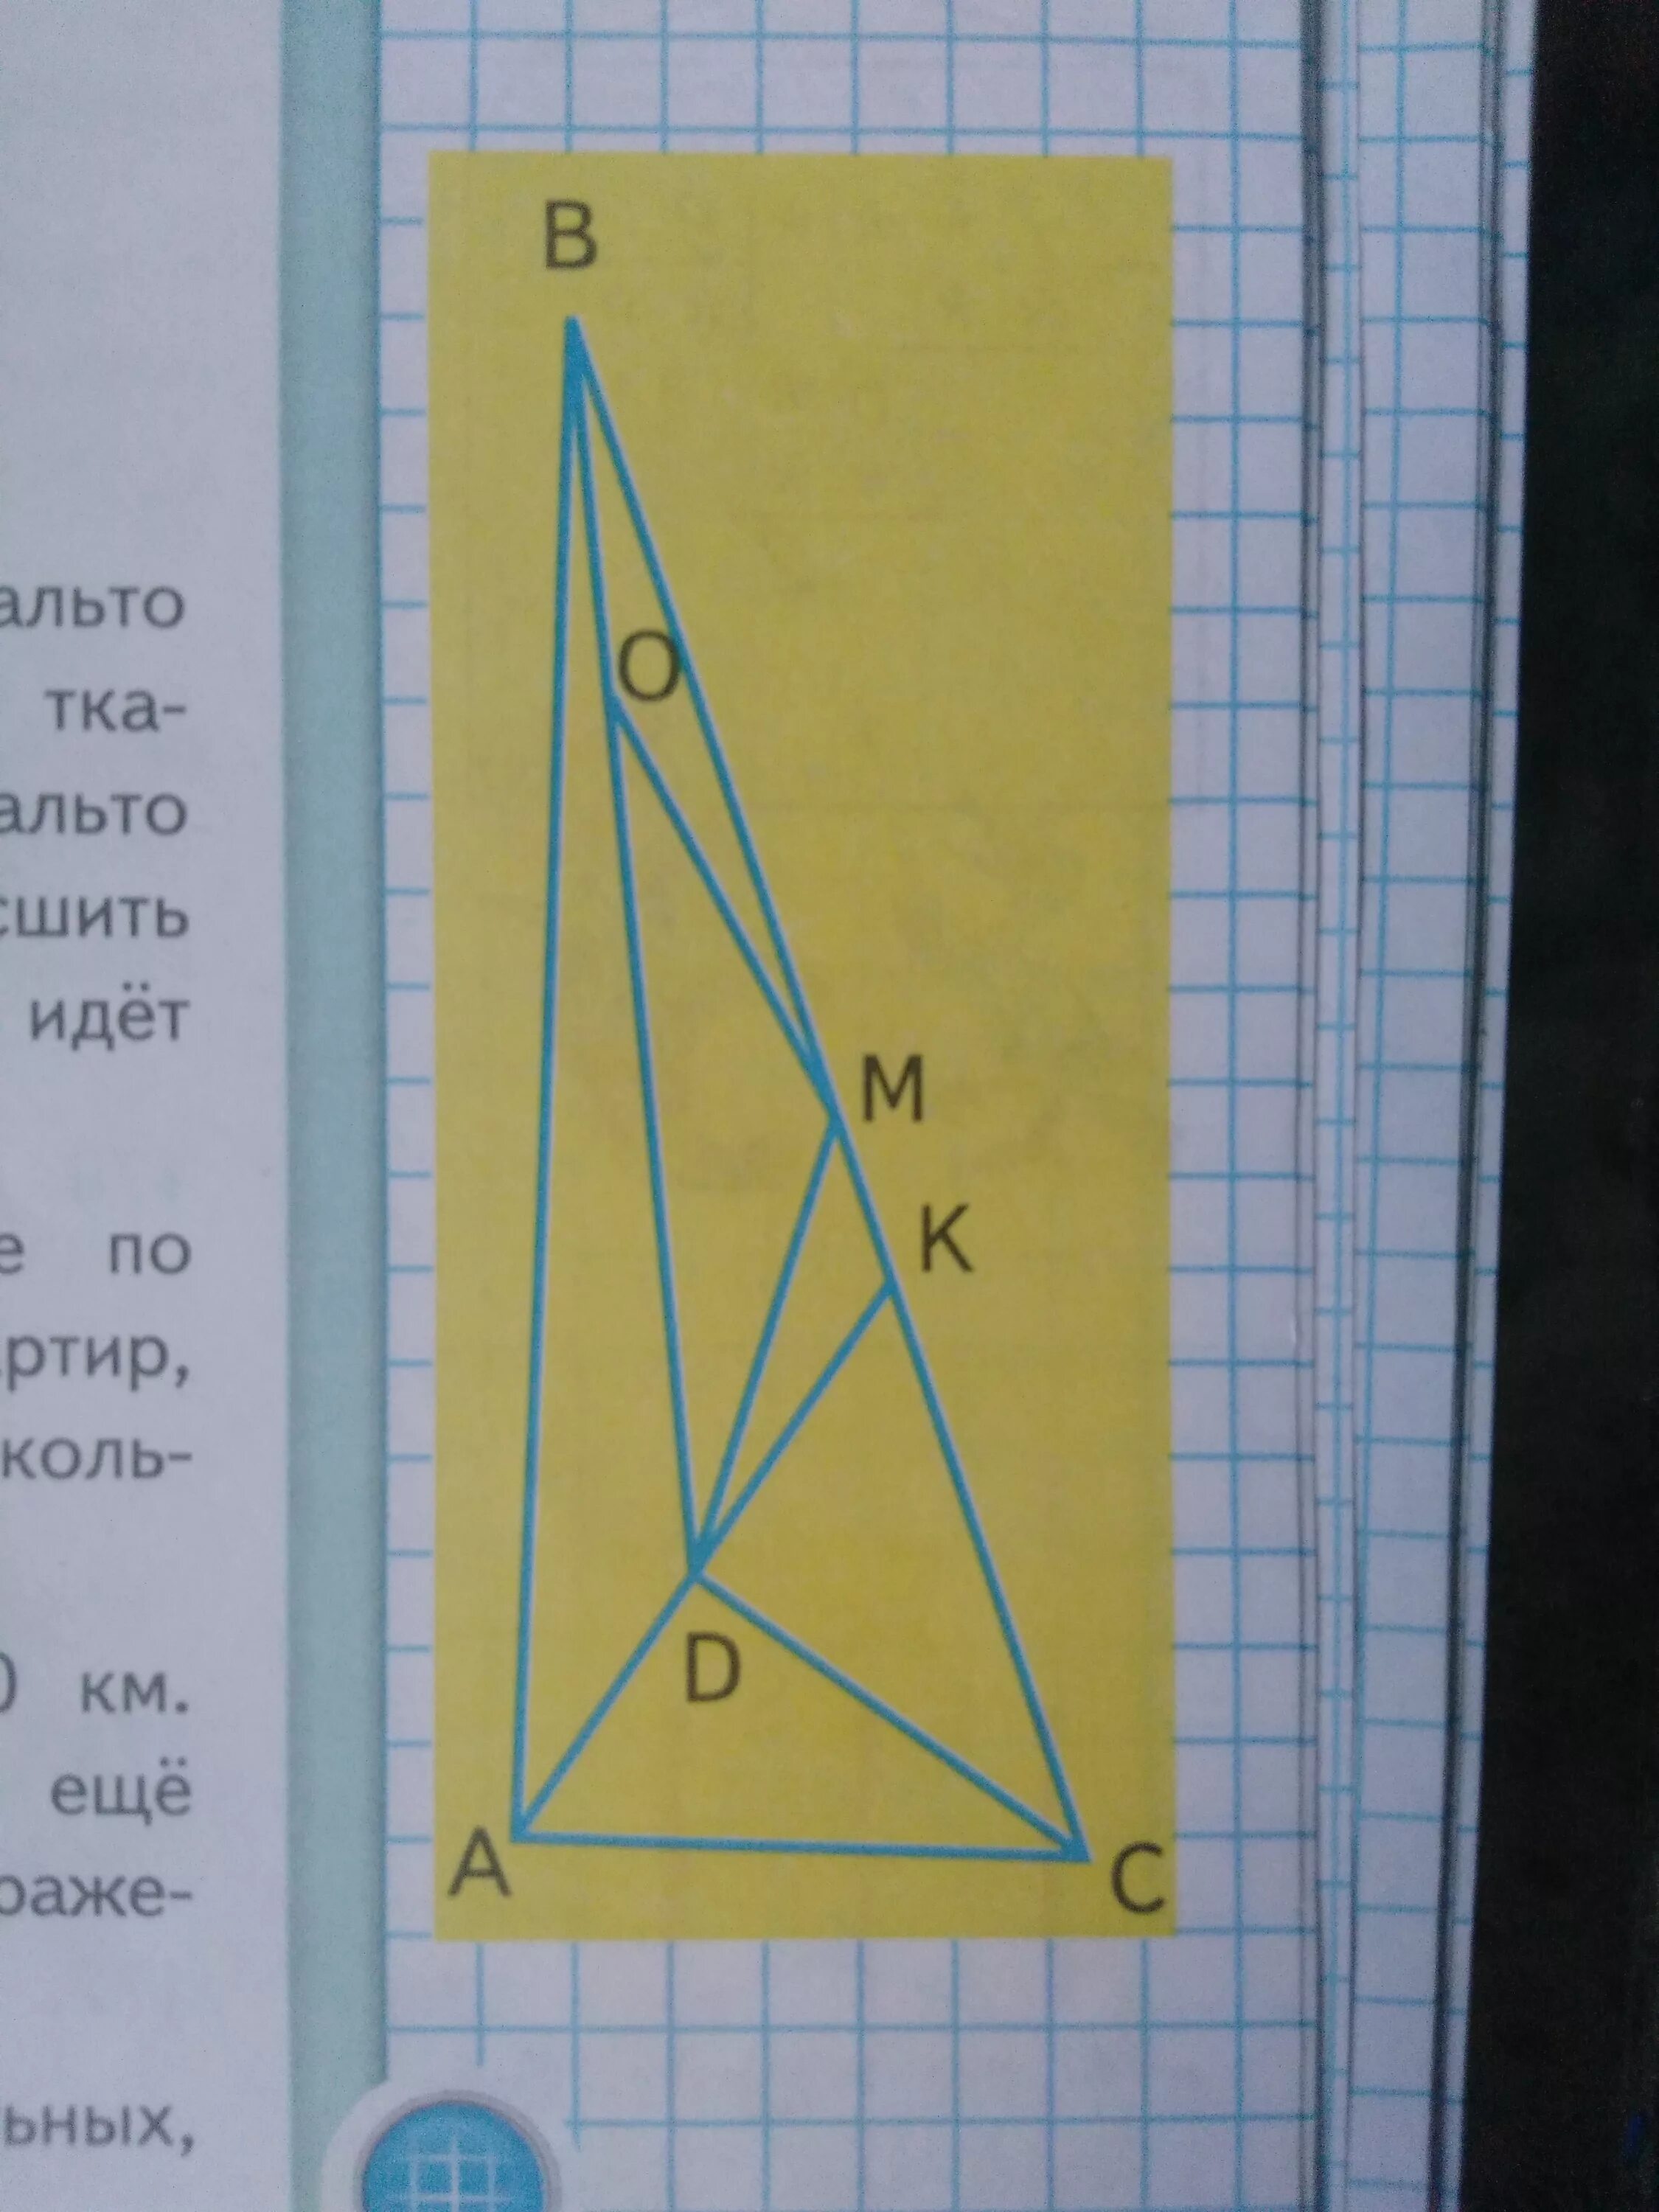 Выпиши названия прямоугольного треугольника остроугольных треугольников. Название прямоугольных тупоугольных и остроугольных. Название прямоугольных тупоугольных и остроугольных треугольников. Названия тупоугольных,прямоугольных, остроугольных и треугольных. Рассмотри чертеж и запиши названия прямоугольных остроугольных.